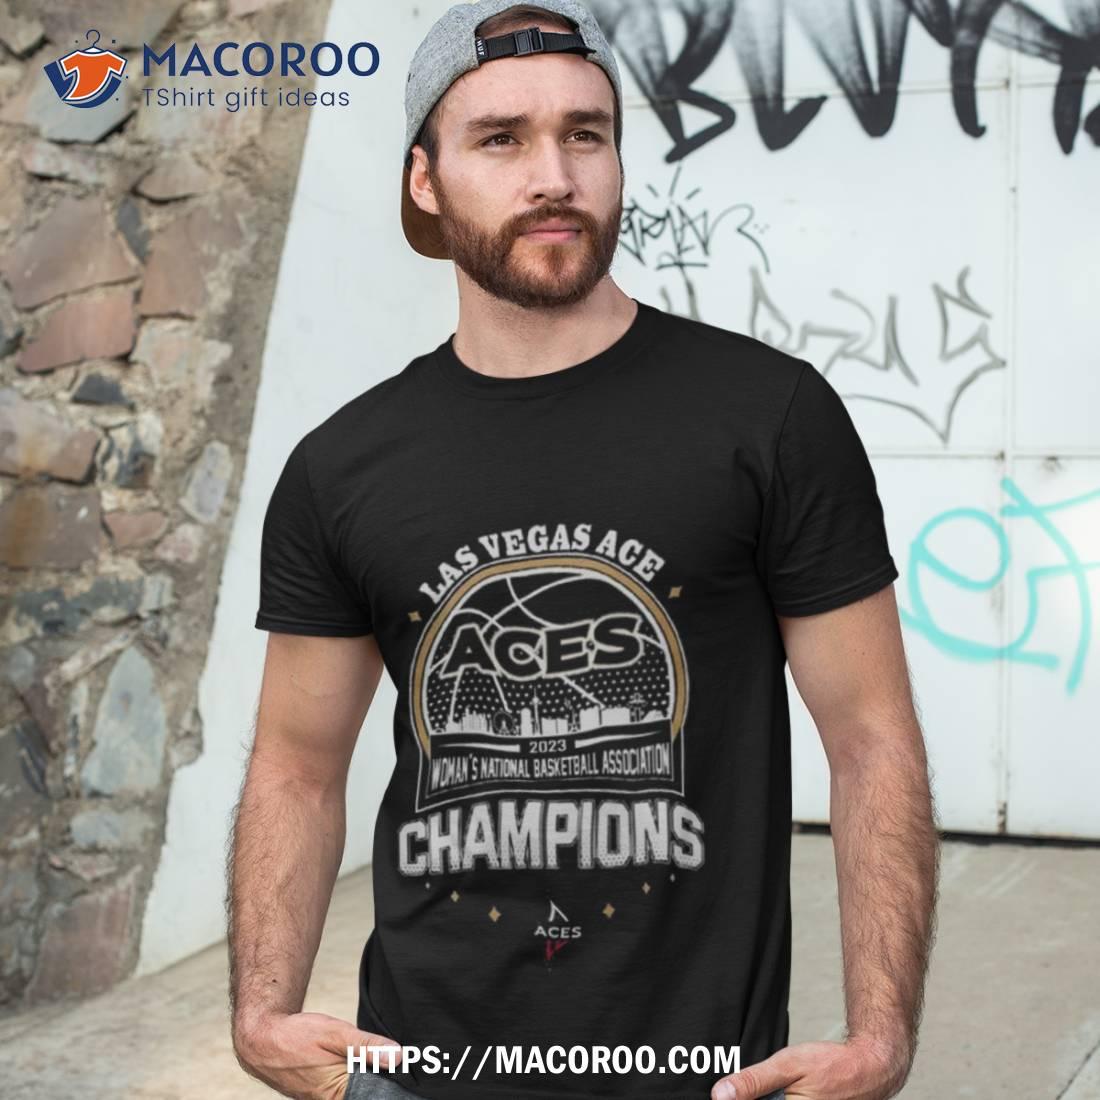 Las Vegas Aces Wnba 2023 Champion T Shirt